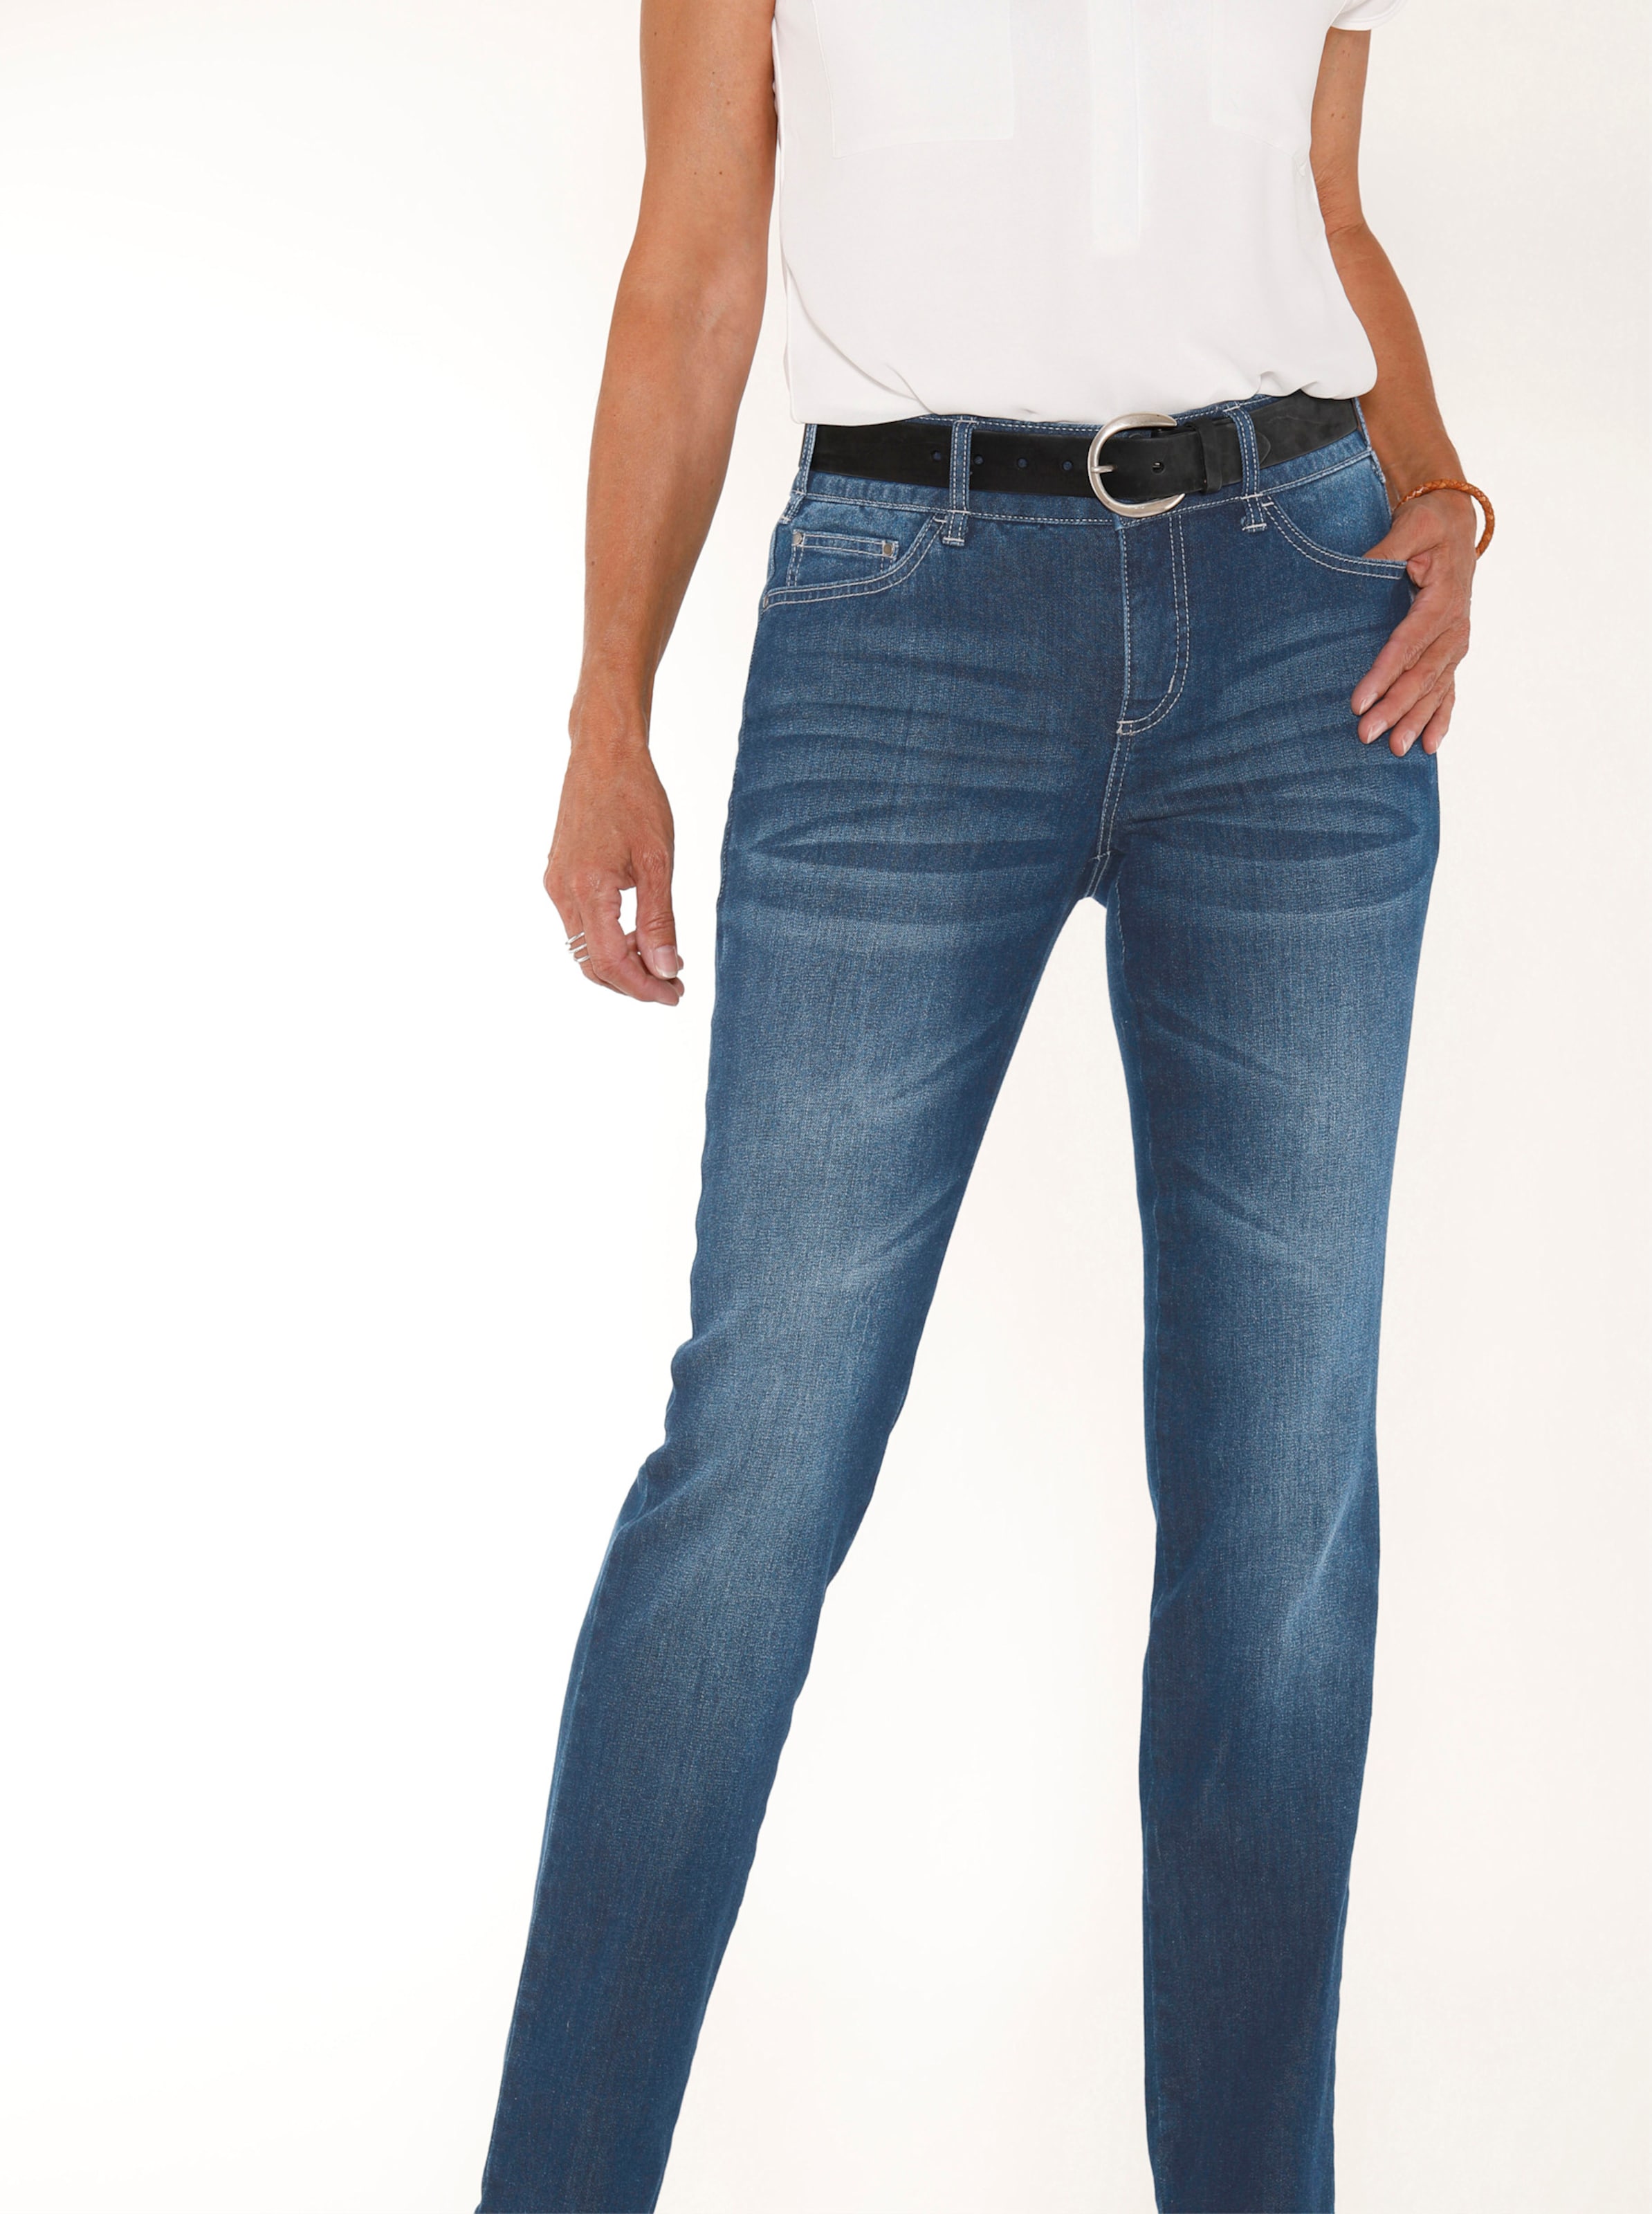 Witt Damen Jeans mit Nieten an den Taschen, blue-stone-washed